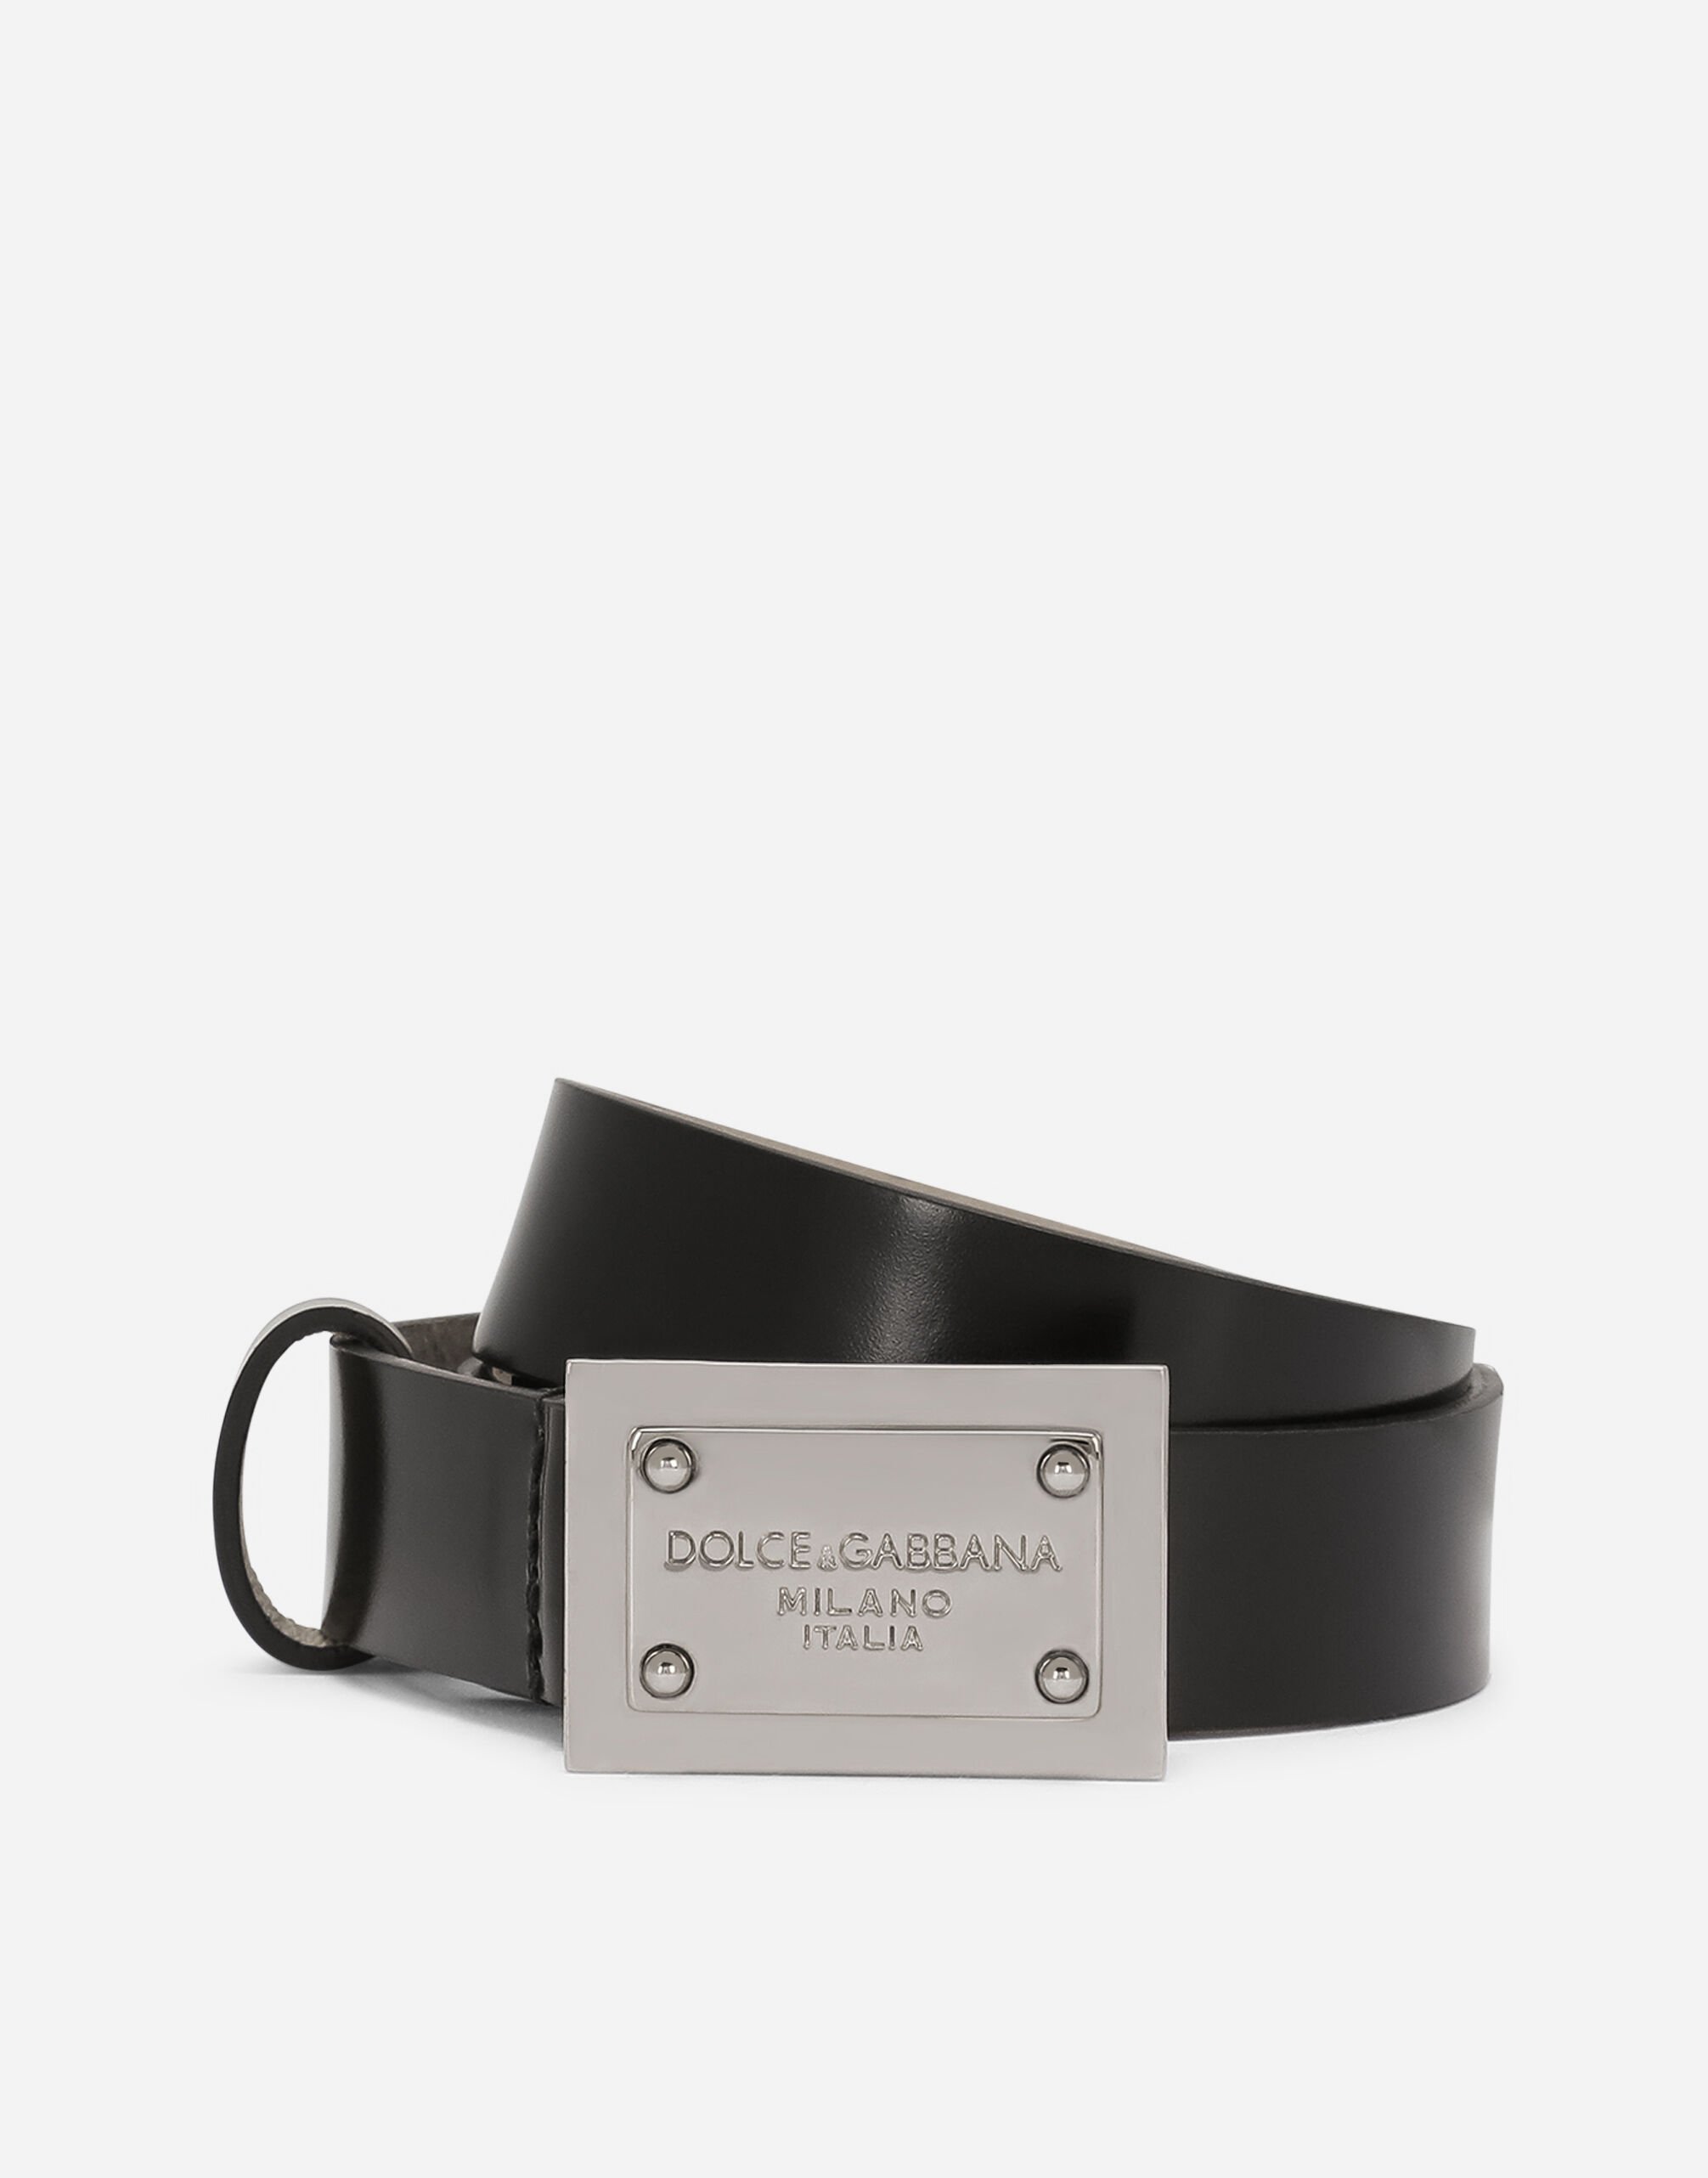 Dolce & Gabbana Calfskin belt with branded tag Transparent lime VG400NVP171